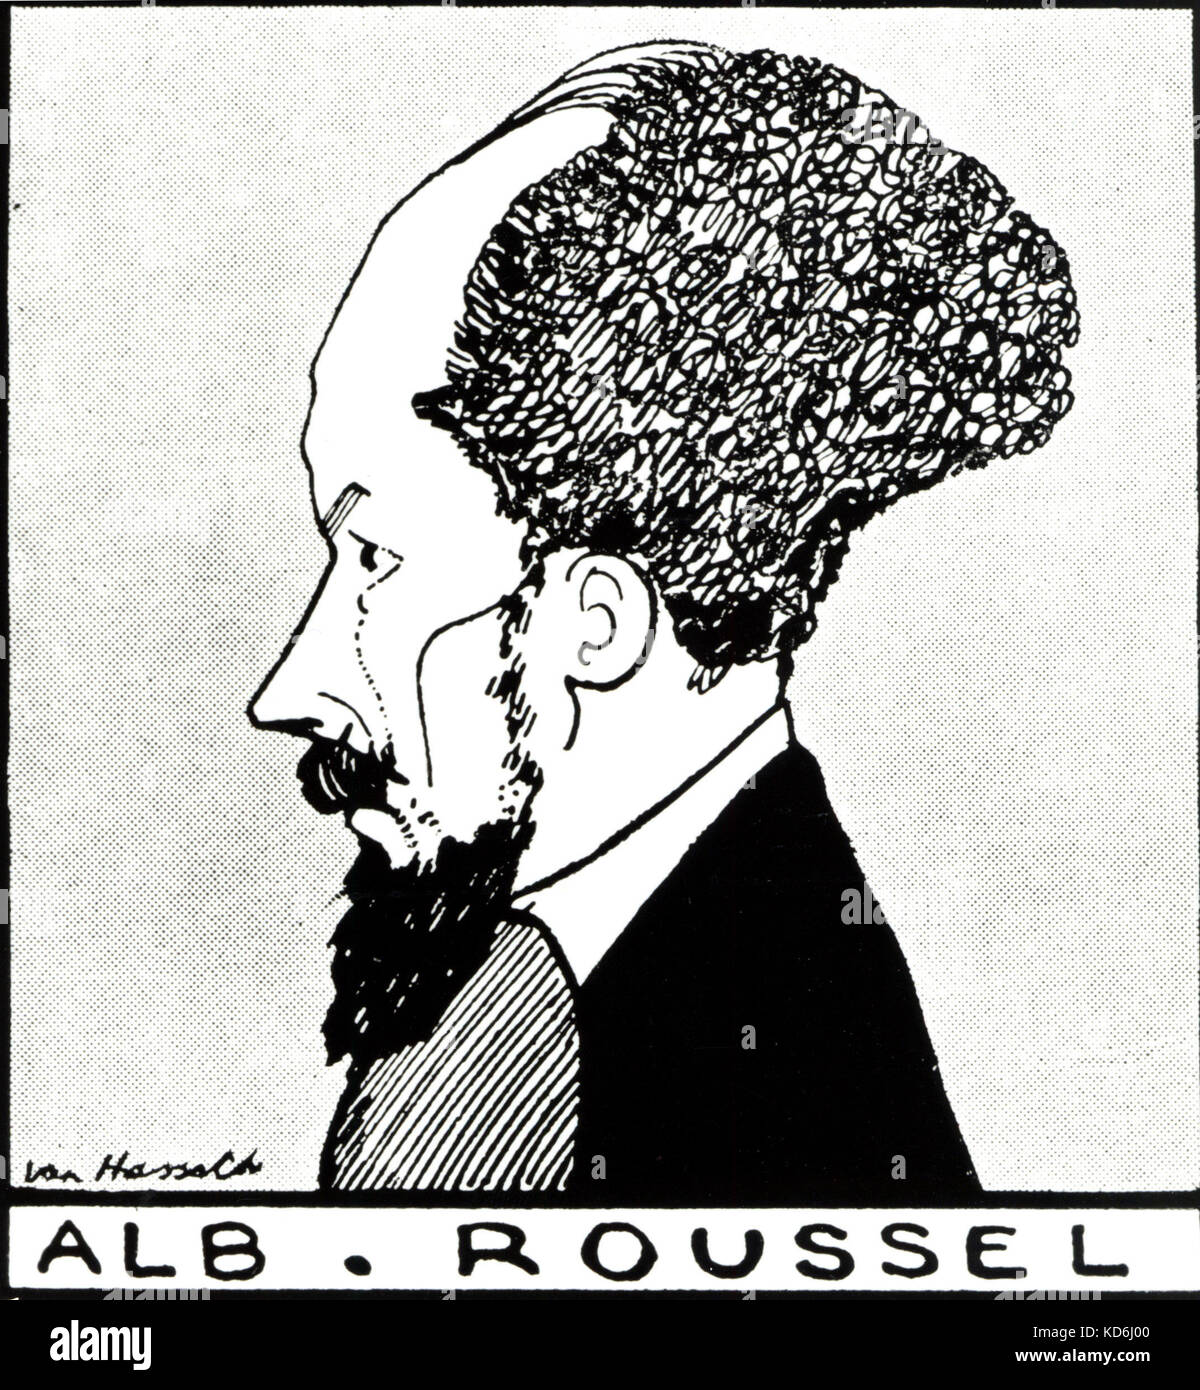 Albert Roussel, französischer Komponist, 1869-1937. Profil Zeichnung. Ian Hassack (Daten nicht bekannt) Stockfoto